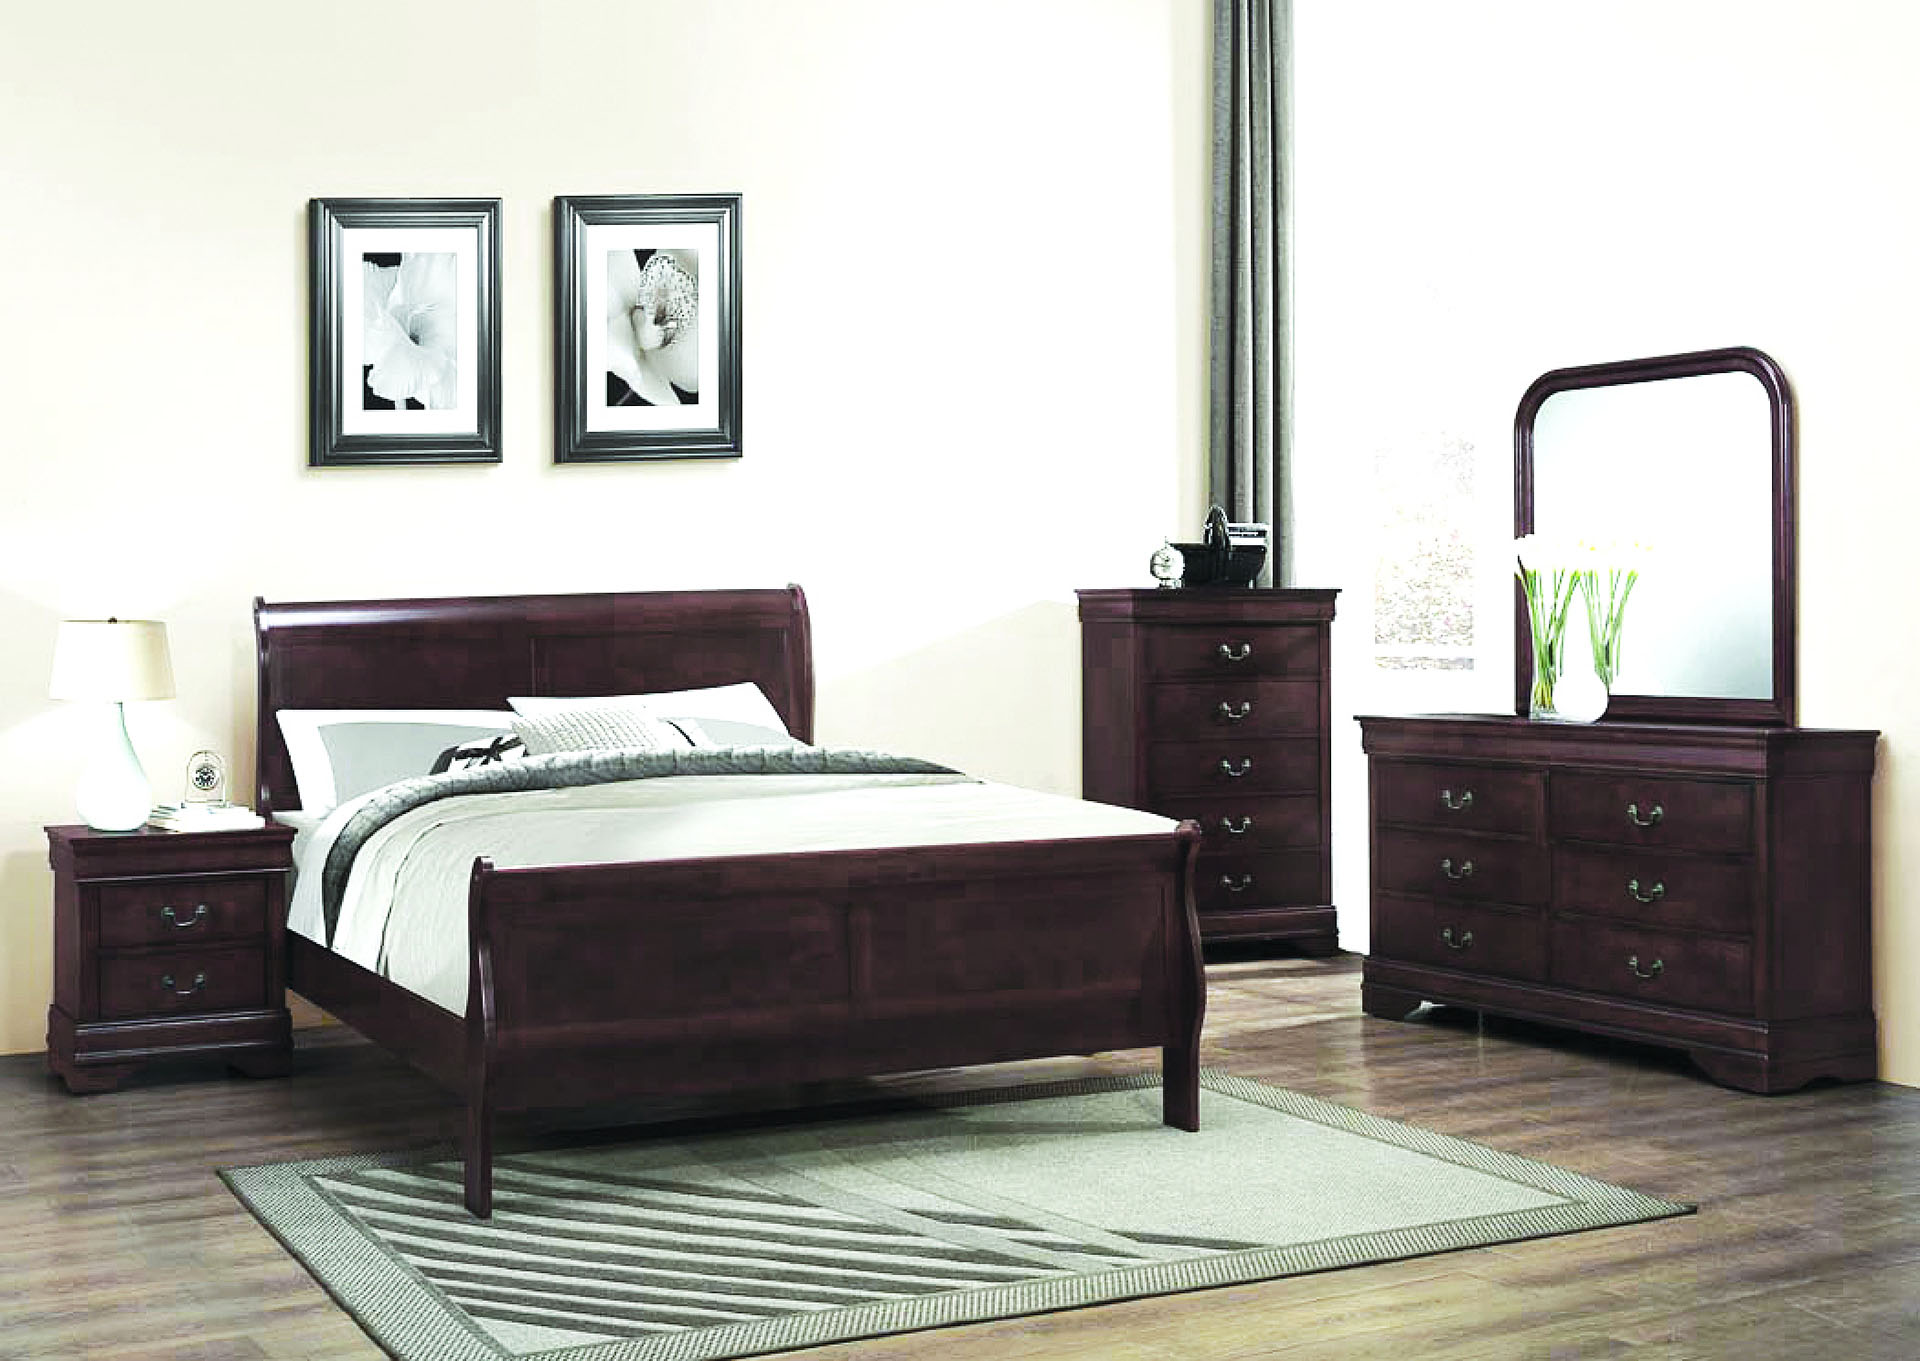 Louis Phillipe Espresso Twin Bed,Galaxy Home Furniture